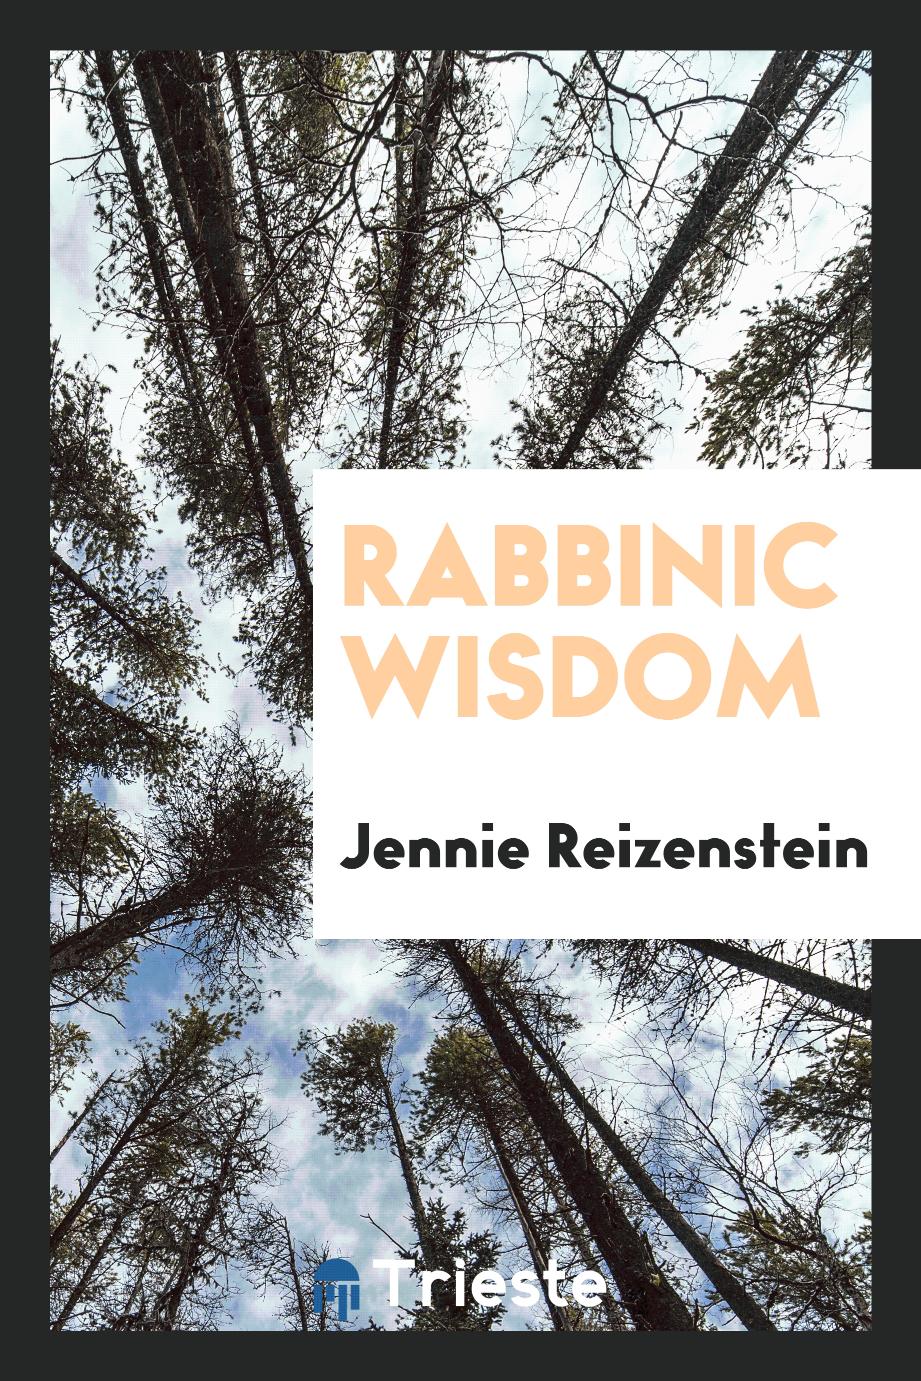 Rabbinic wisdom